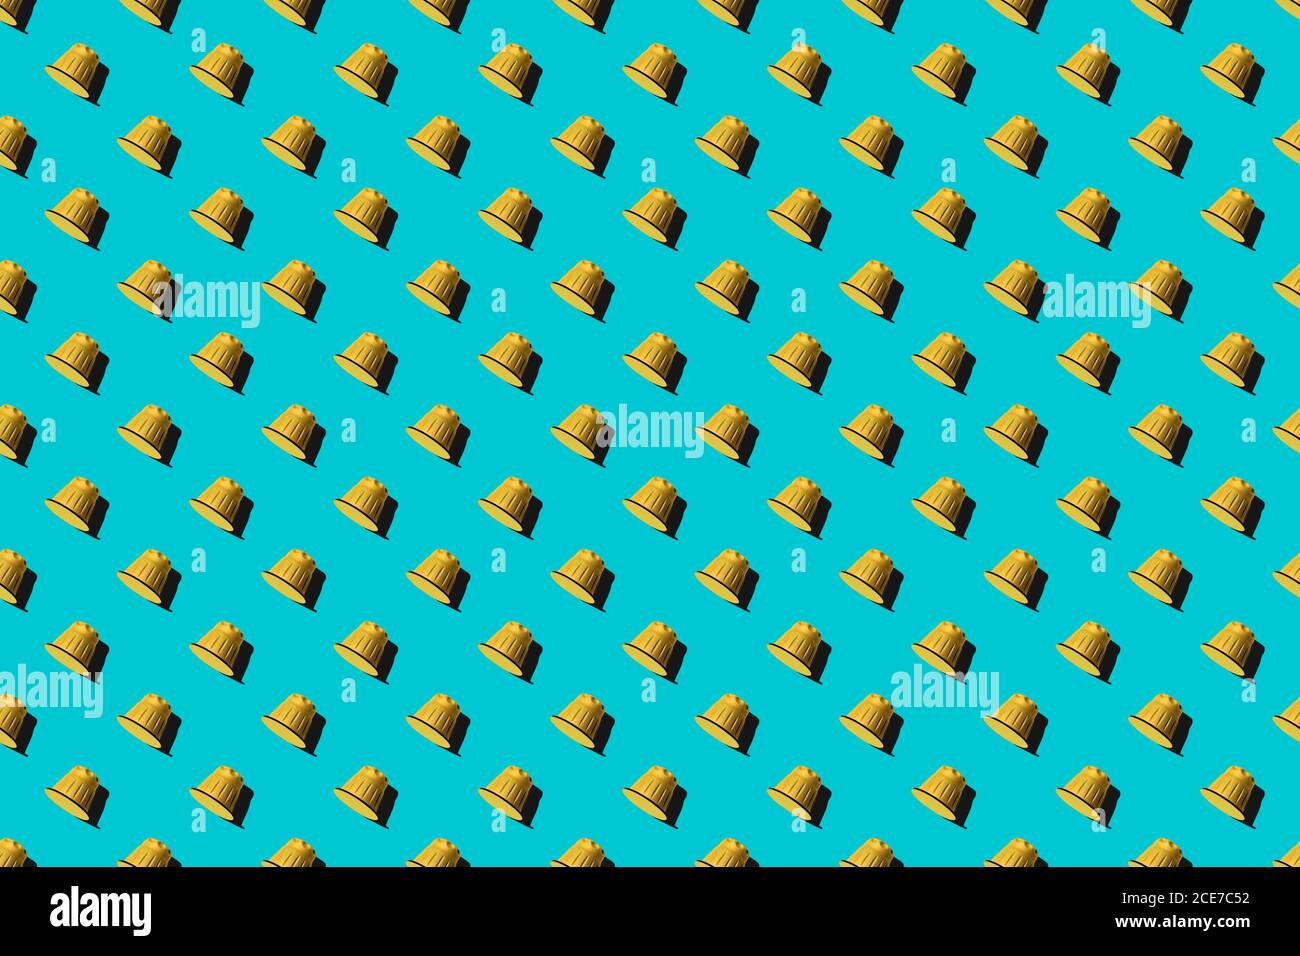 Ansicht der gelben Kaffeepads in geraden Reihen Als nahtloses Muster auf blauem Hintergrund Stockfoto